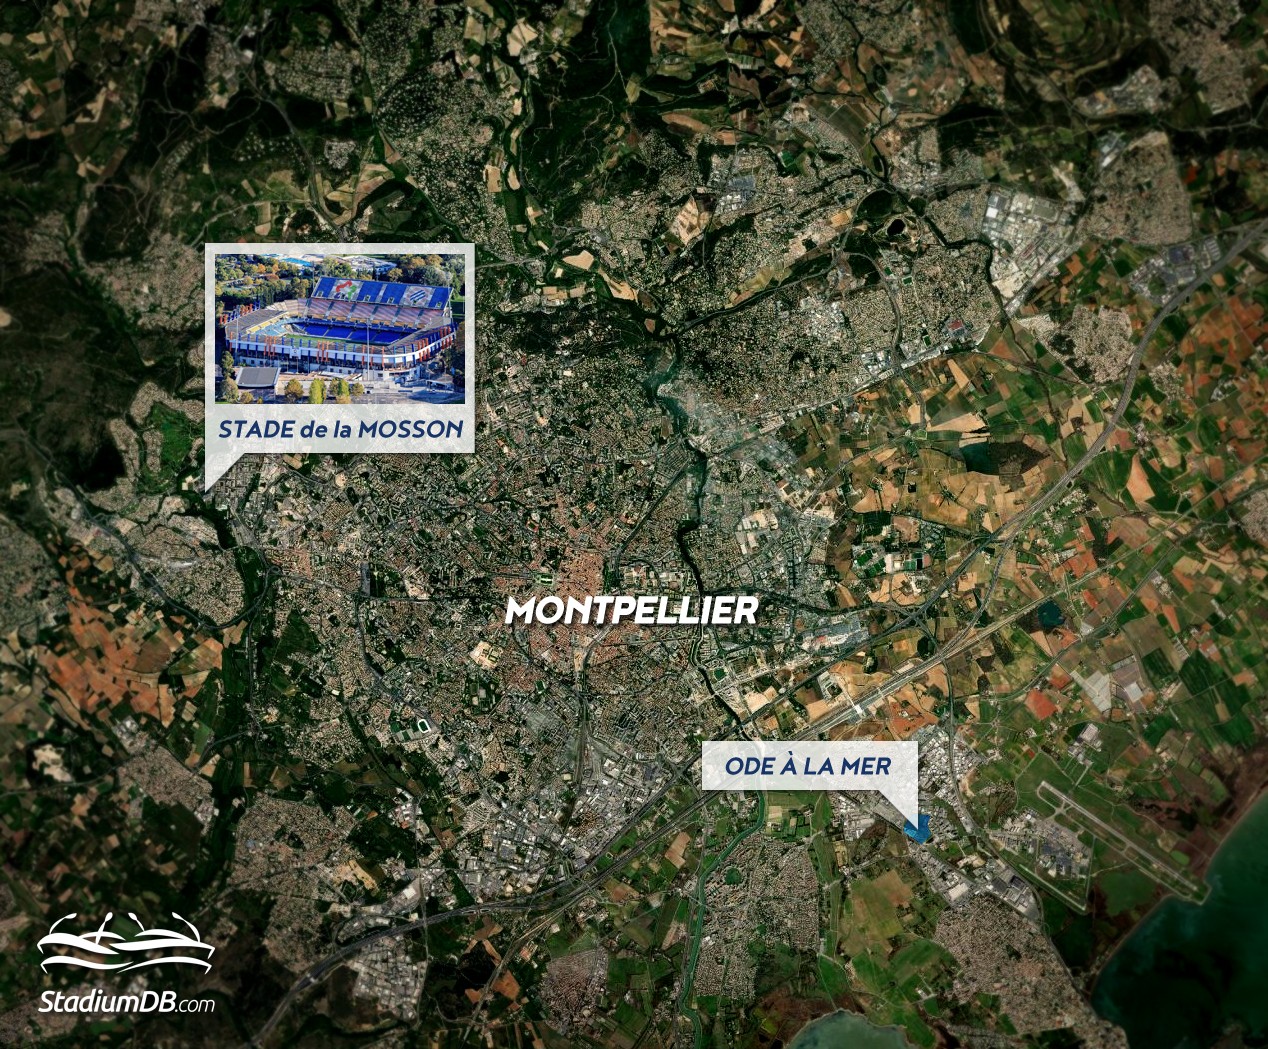 Nowy stadion dla Montpellier powstanie z dala od Stade de la Mosson